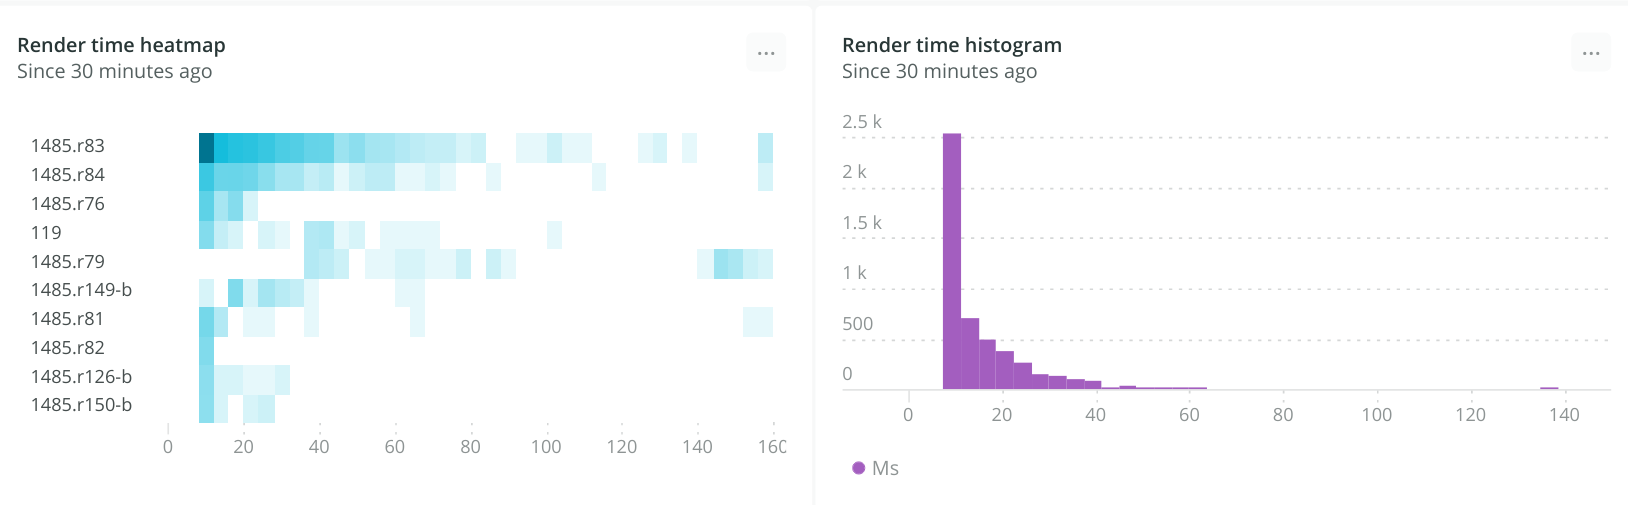 Rendering time in ms breakdown by version